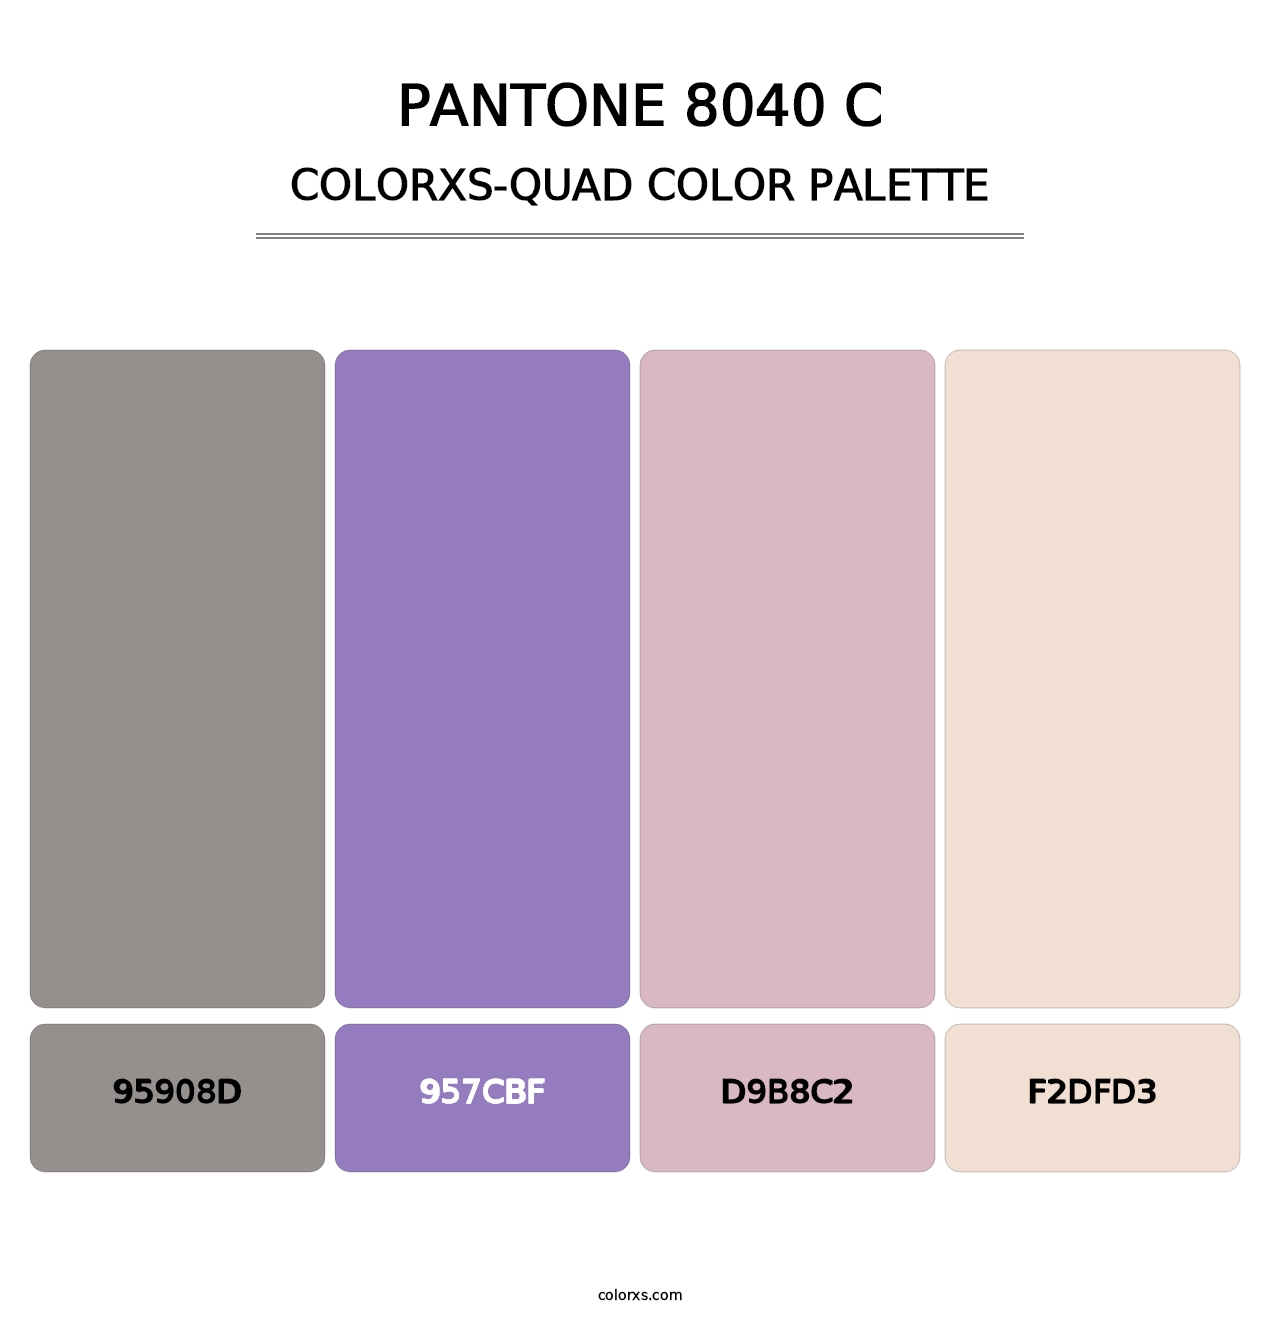 PANTONE 8040 C - Colorxs Quad Palette